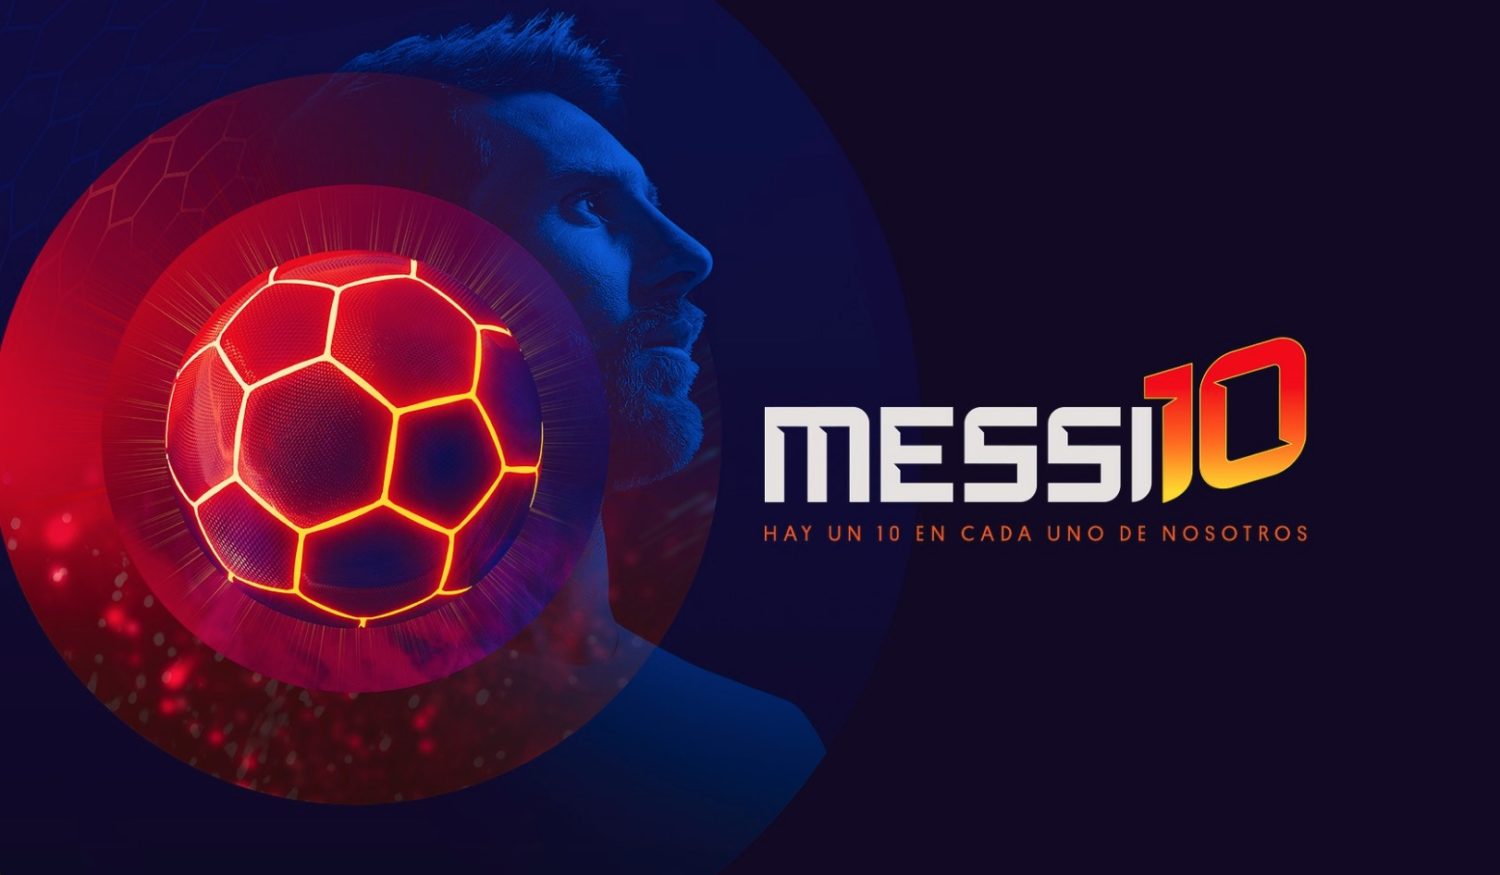 Comienza la preventa de entradas para "Messi10", el show de Cirque du Soleil  | Radio Mitre